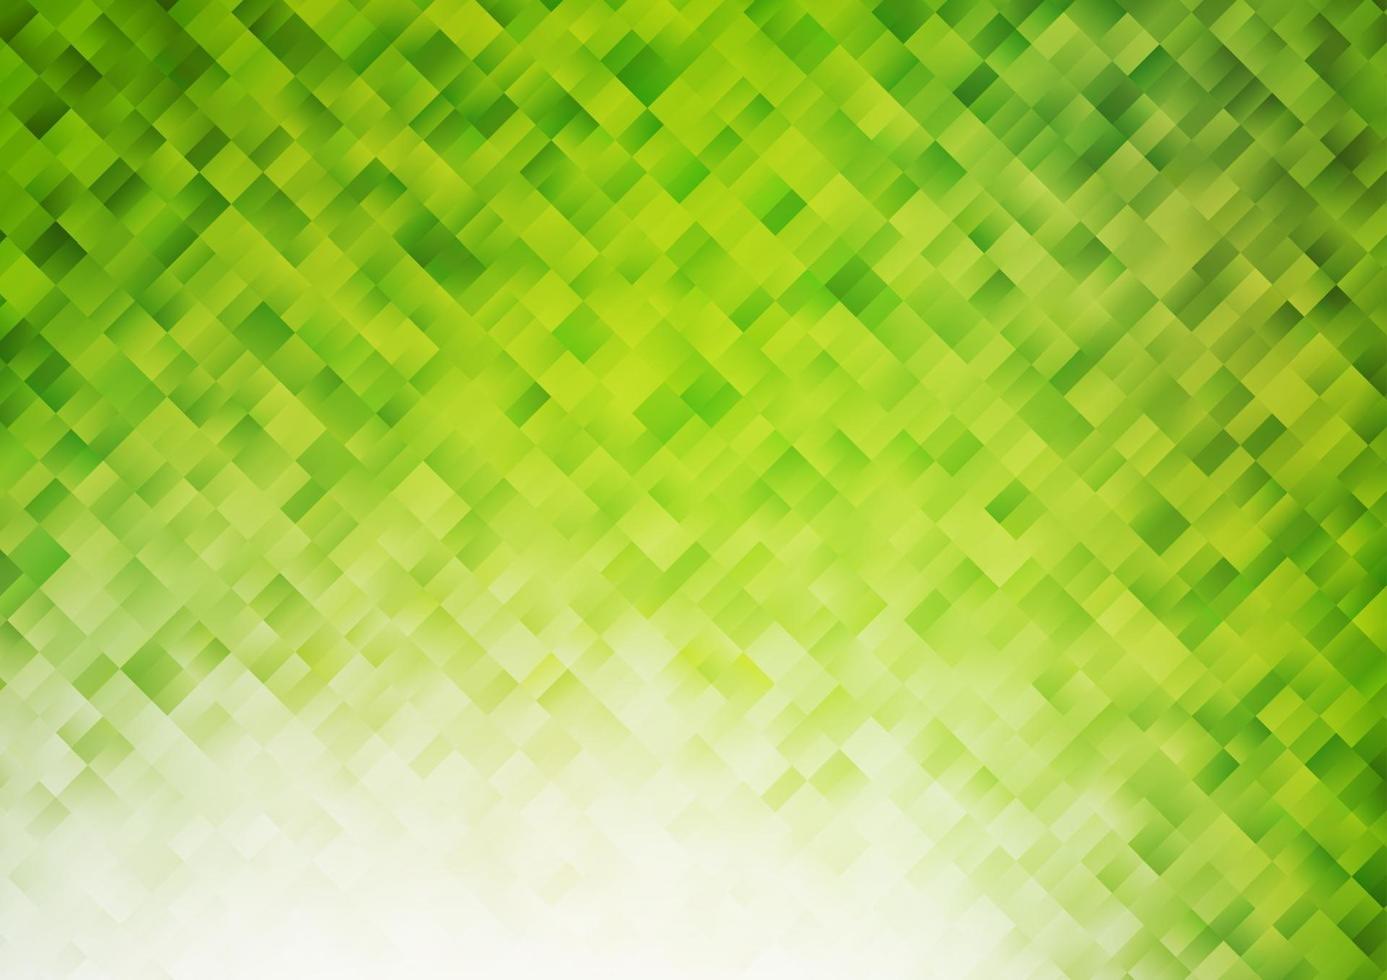 ljusgrön vektor mall med kristaller, rektanglar.